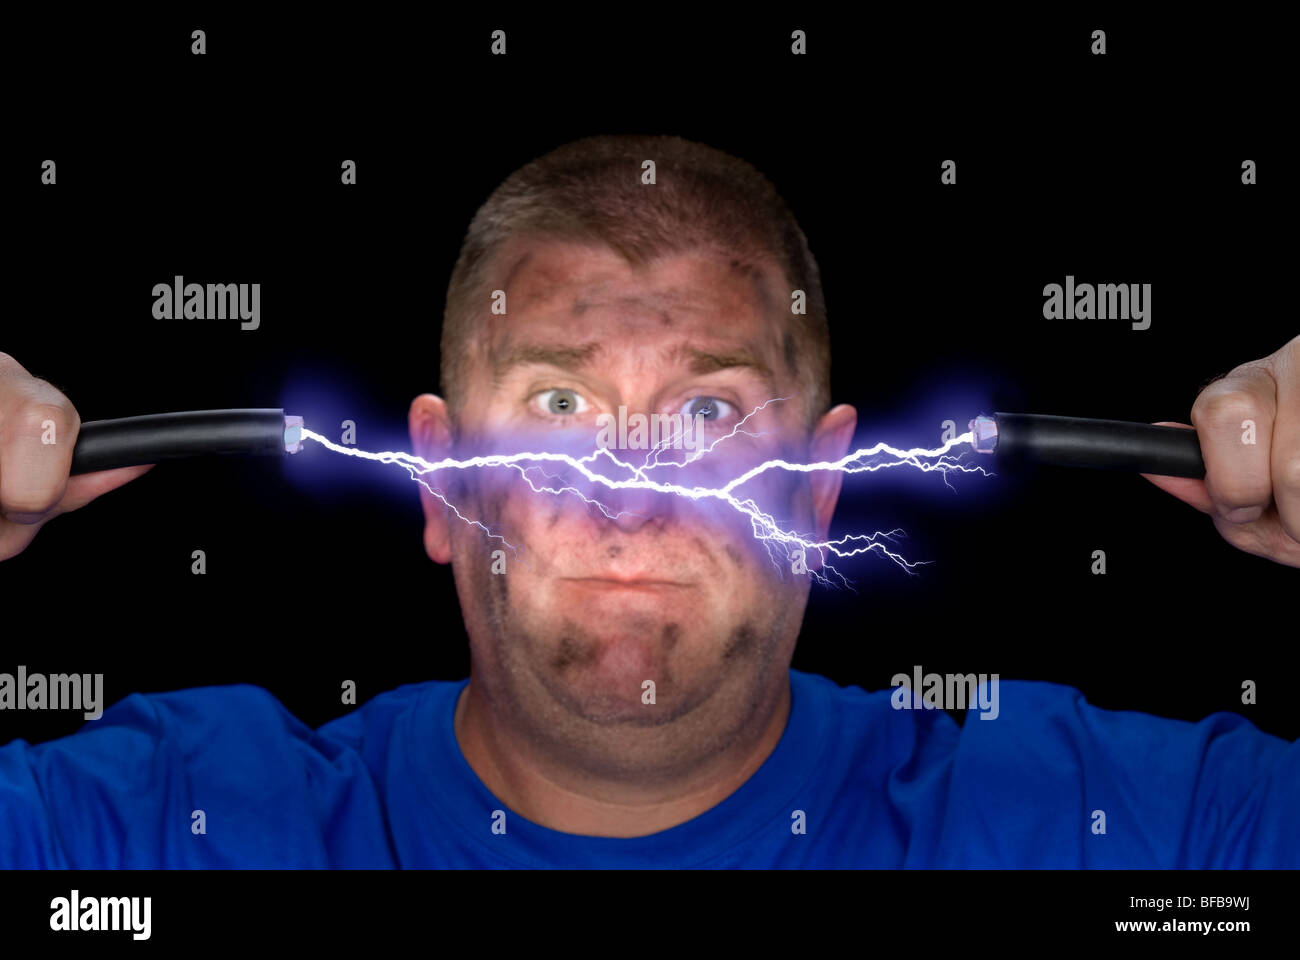 Elektriker spielt mit einigen spannungsführende Leitungen, verursacht einen Bogen von Strom und das Gesicht des Mannes zu verkohlen. Stockfoto